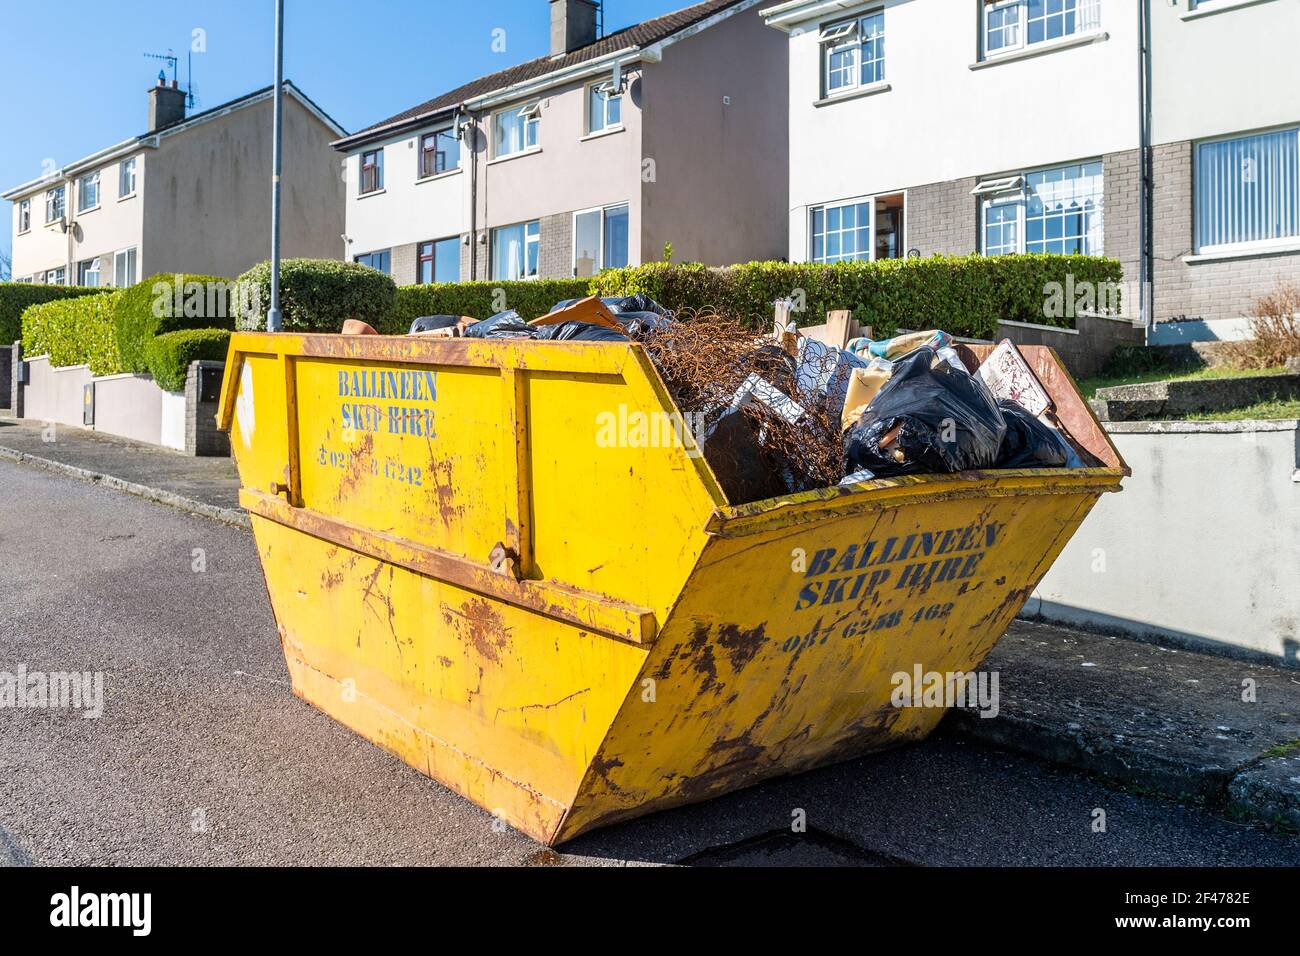 Hire sáltate lleno de basura doméstica en una vivienda en Irlanda. Foto de stock